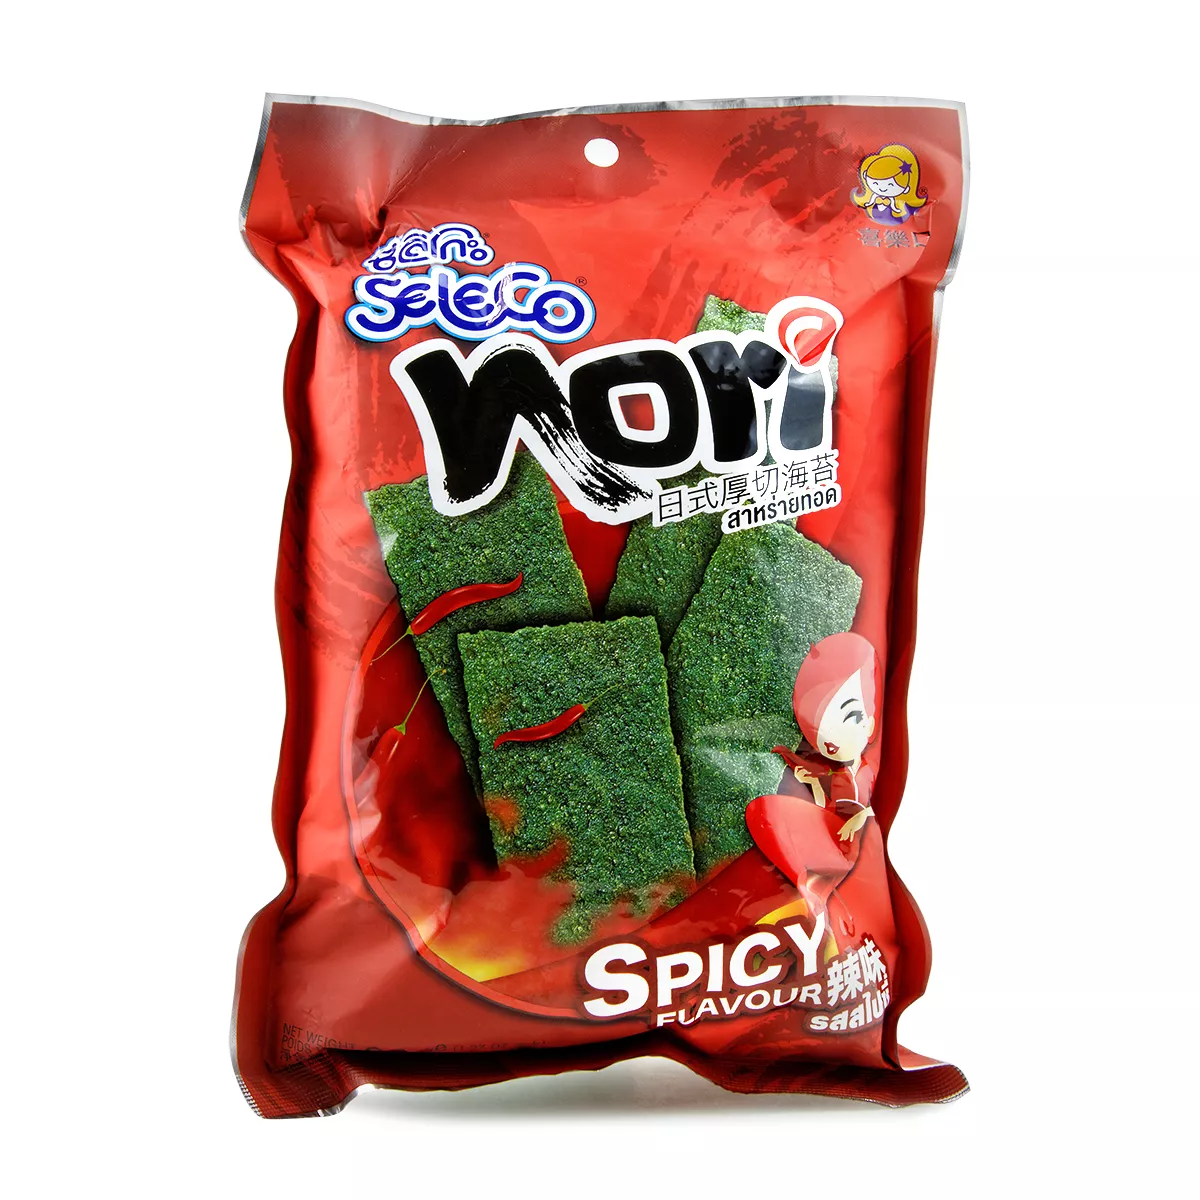 Snack alge prajte Spicy SELECO 36g, [],asianfood.ro